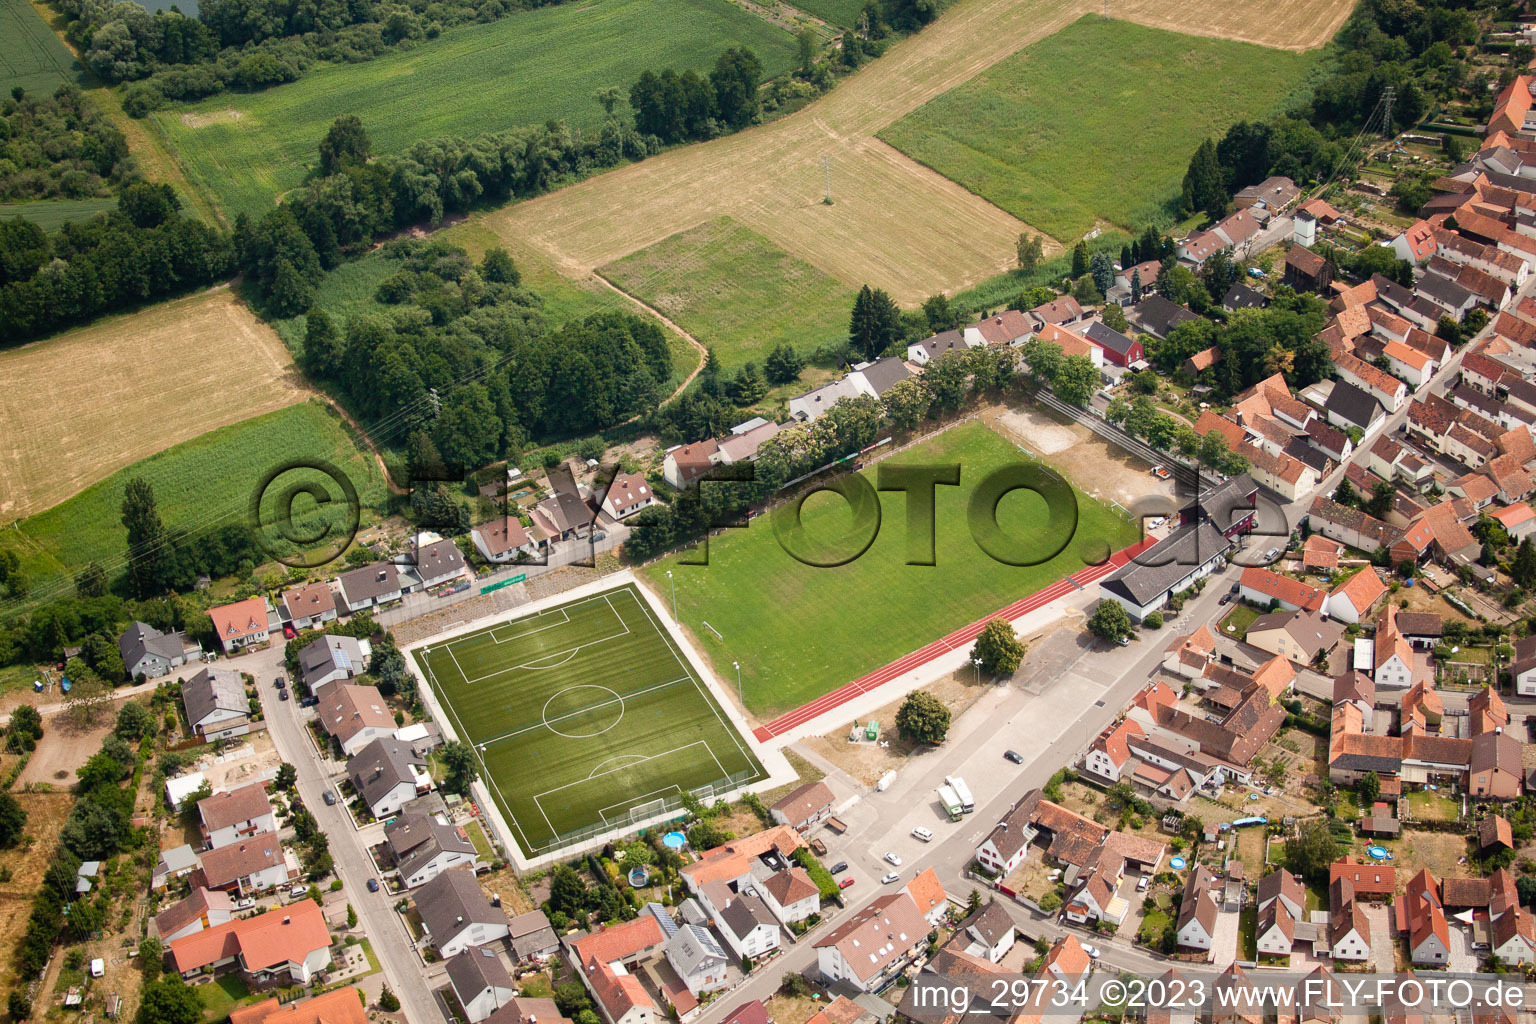 Photographie aérienne de Terrain de football à Jockgrim dans le département Rhénanie-Palatinat, Allemagne